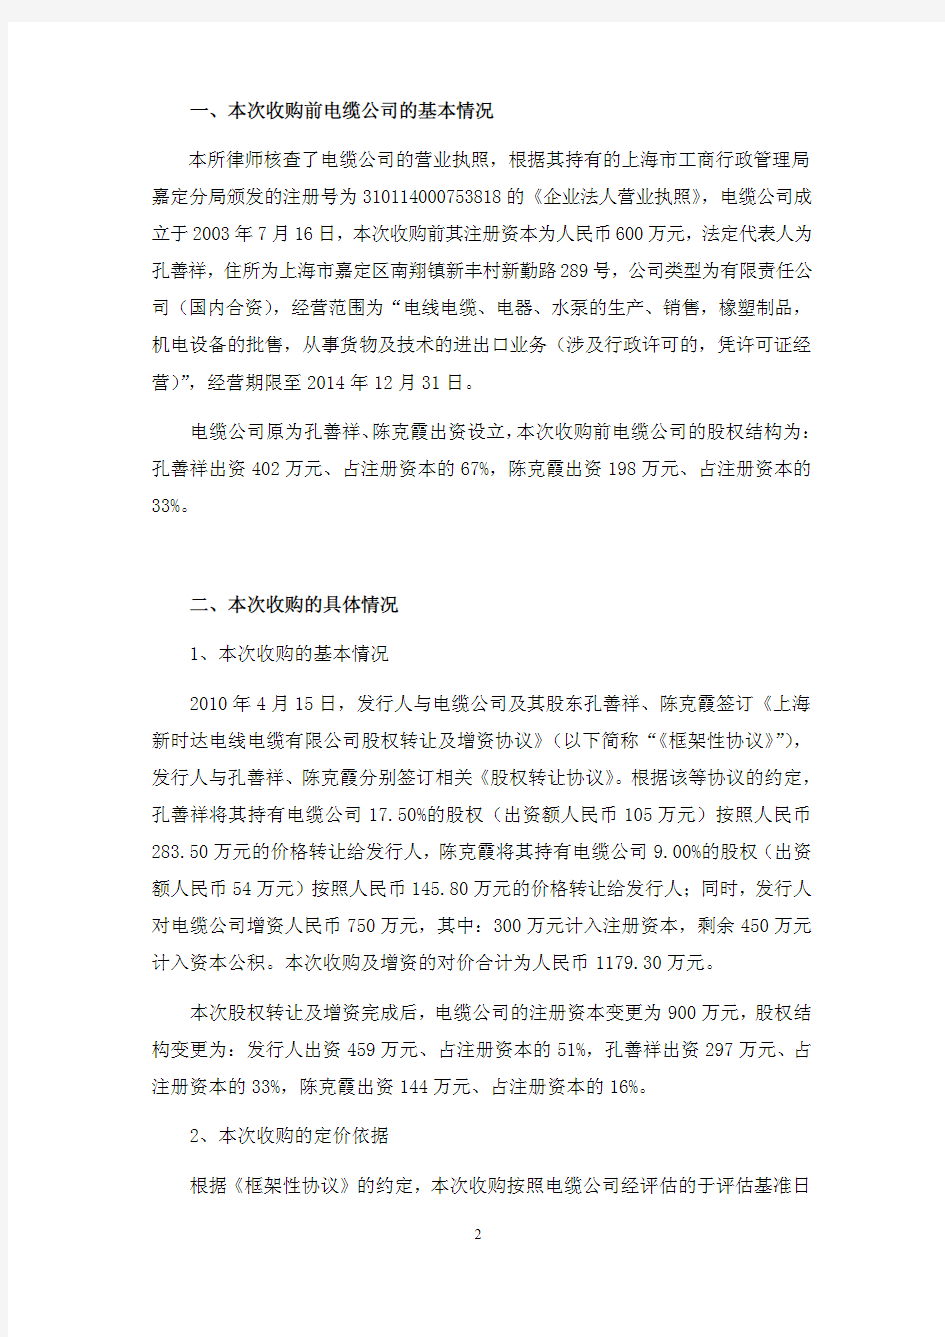 新时达：上海市广发律师事务所关于公司首次公开发行股票并上市的补充法律意见书(二) 2010-12-07